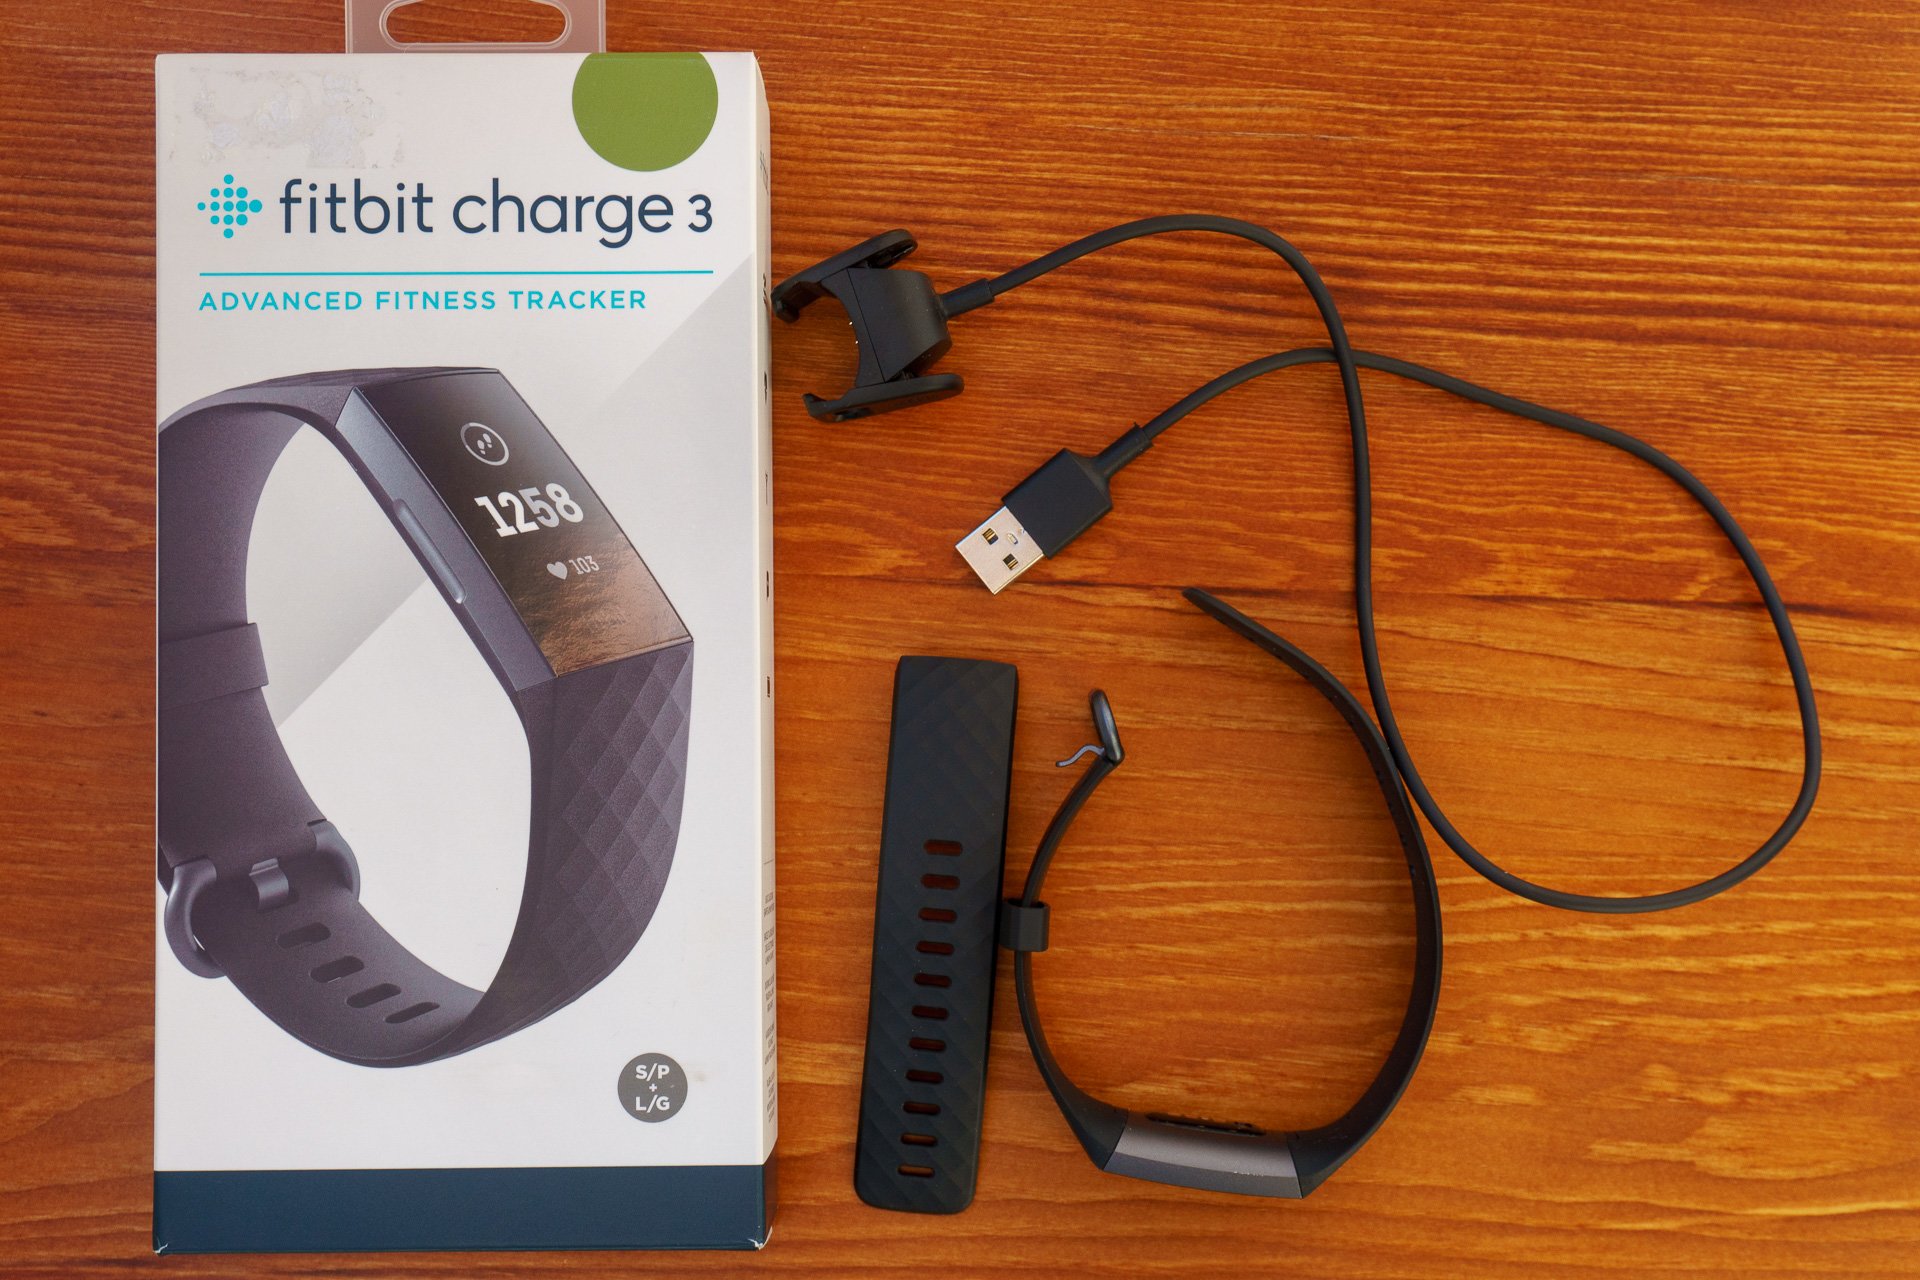 Официальная премьера спортивной группы Fitbit Charge 3 состоялась в августе, но на самом деле она доступна в продаже в течение короткого времени